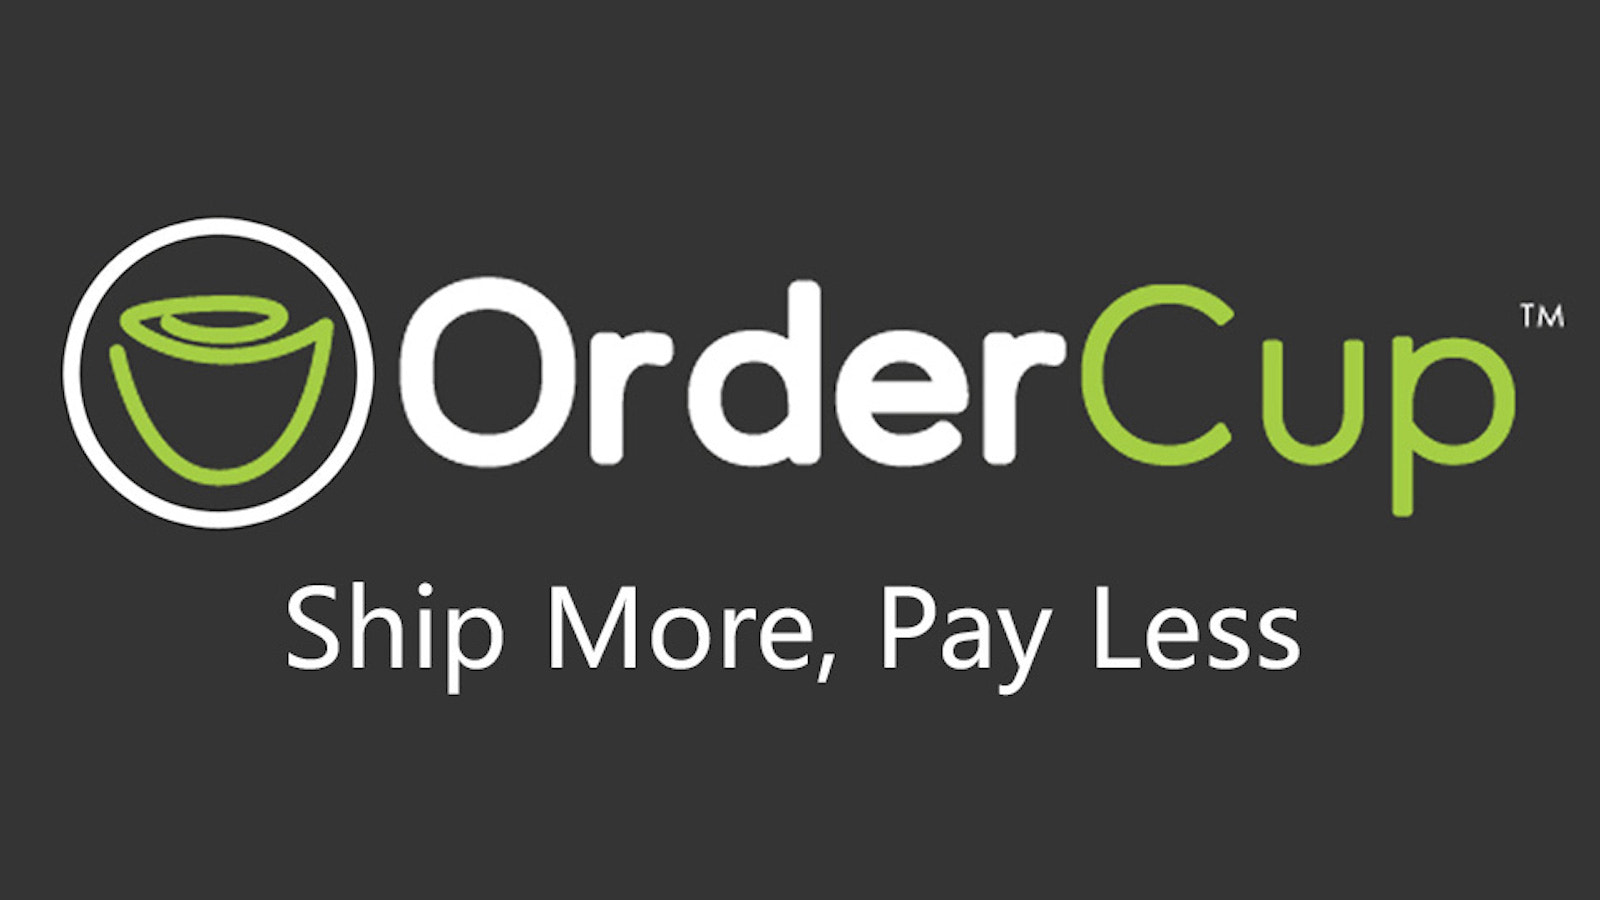 OrderCup: Envie Mais, Pague Menos